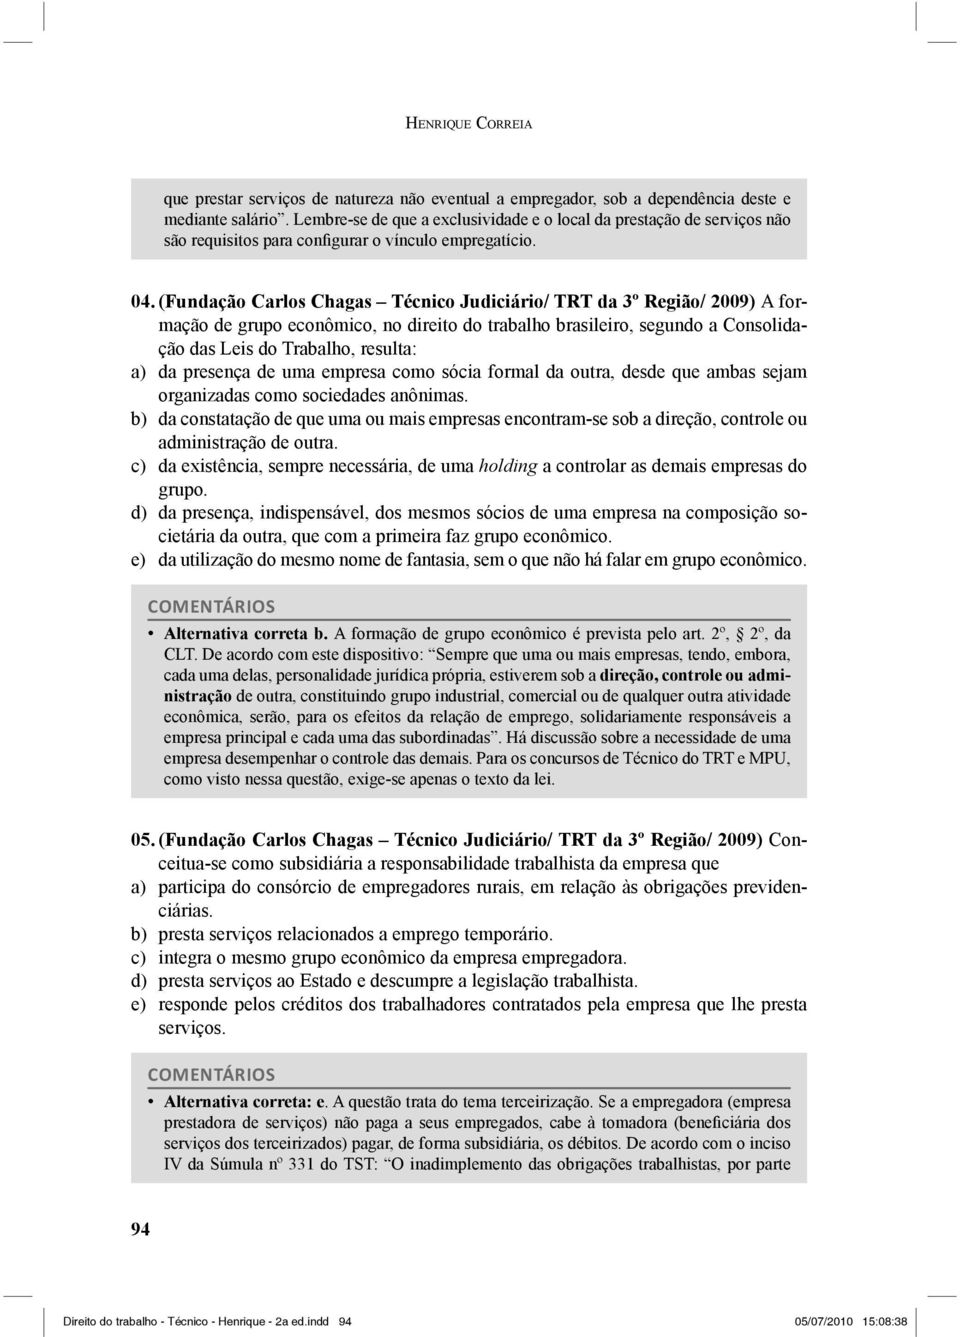 (Fundação Carlos Chagas Técnico Judiciário/ TRT da 3º Região/ 2009) A formação de grupo econômico, no direito do trabalho brasileiro, segundo a Consolidação das Leis do Trabalho, resulta: a) da